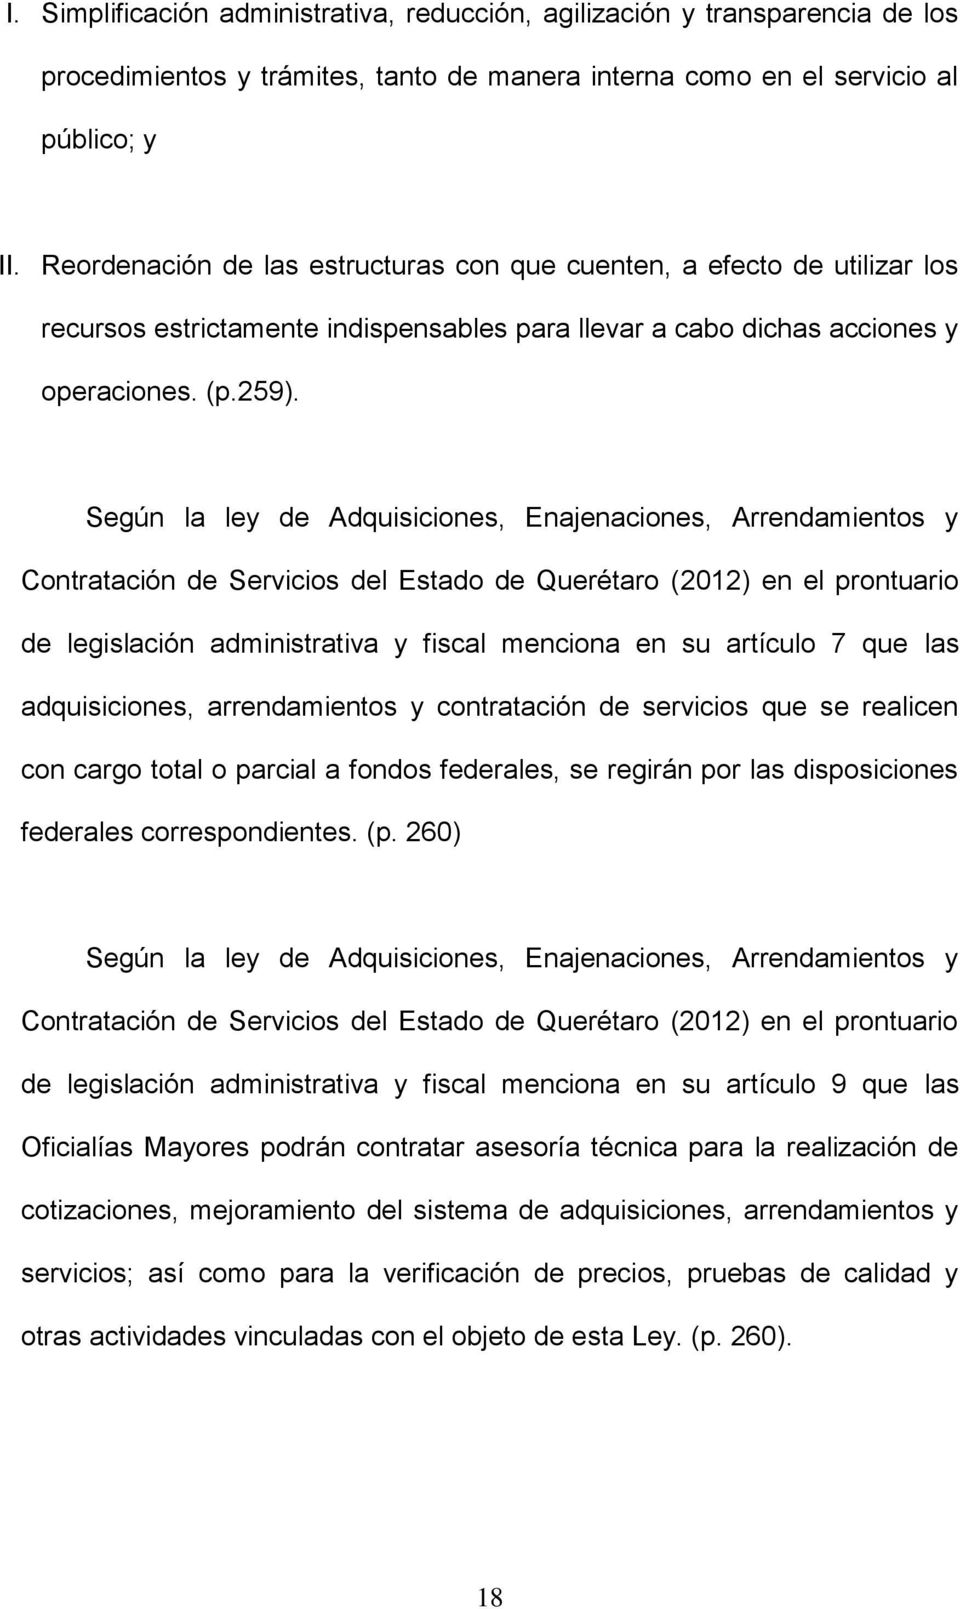 Según la ley de Adquisiciones, Enajenaciones, Arrendamientos y Contratación de Servicios del Estado de Querétaro (2012) en el prontuario de legislación administrativa y fiscal menciona en su artículo